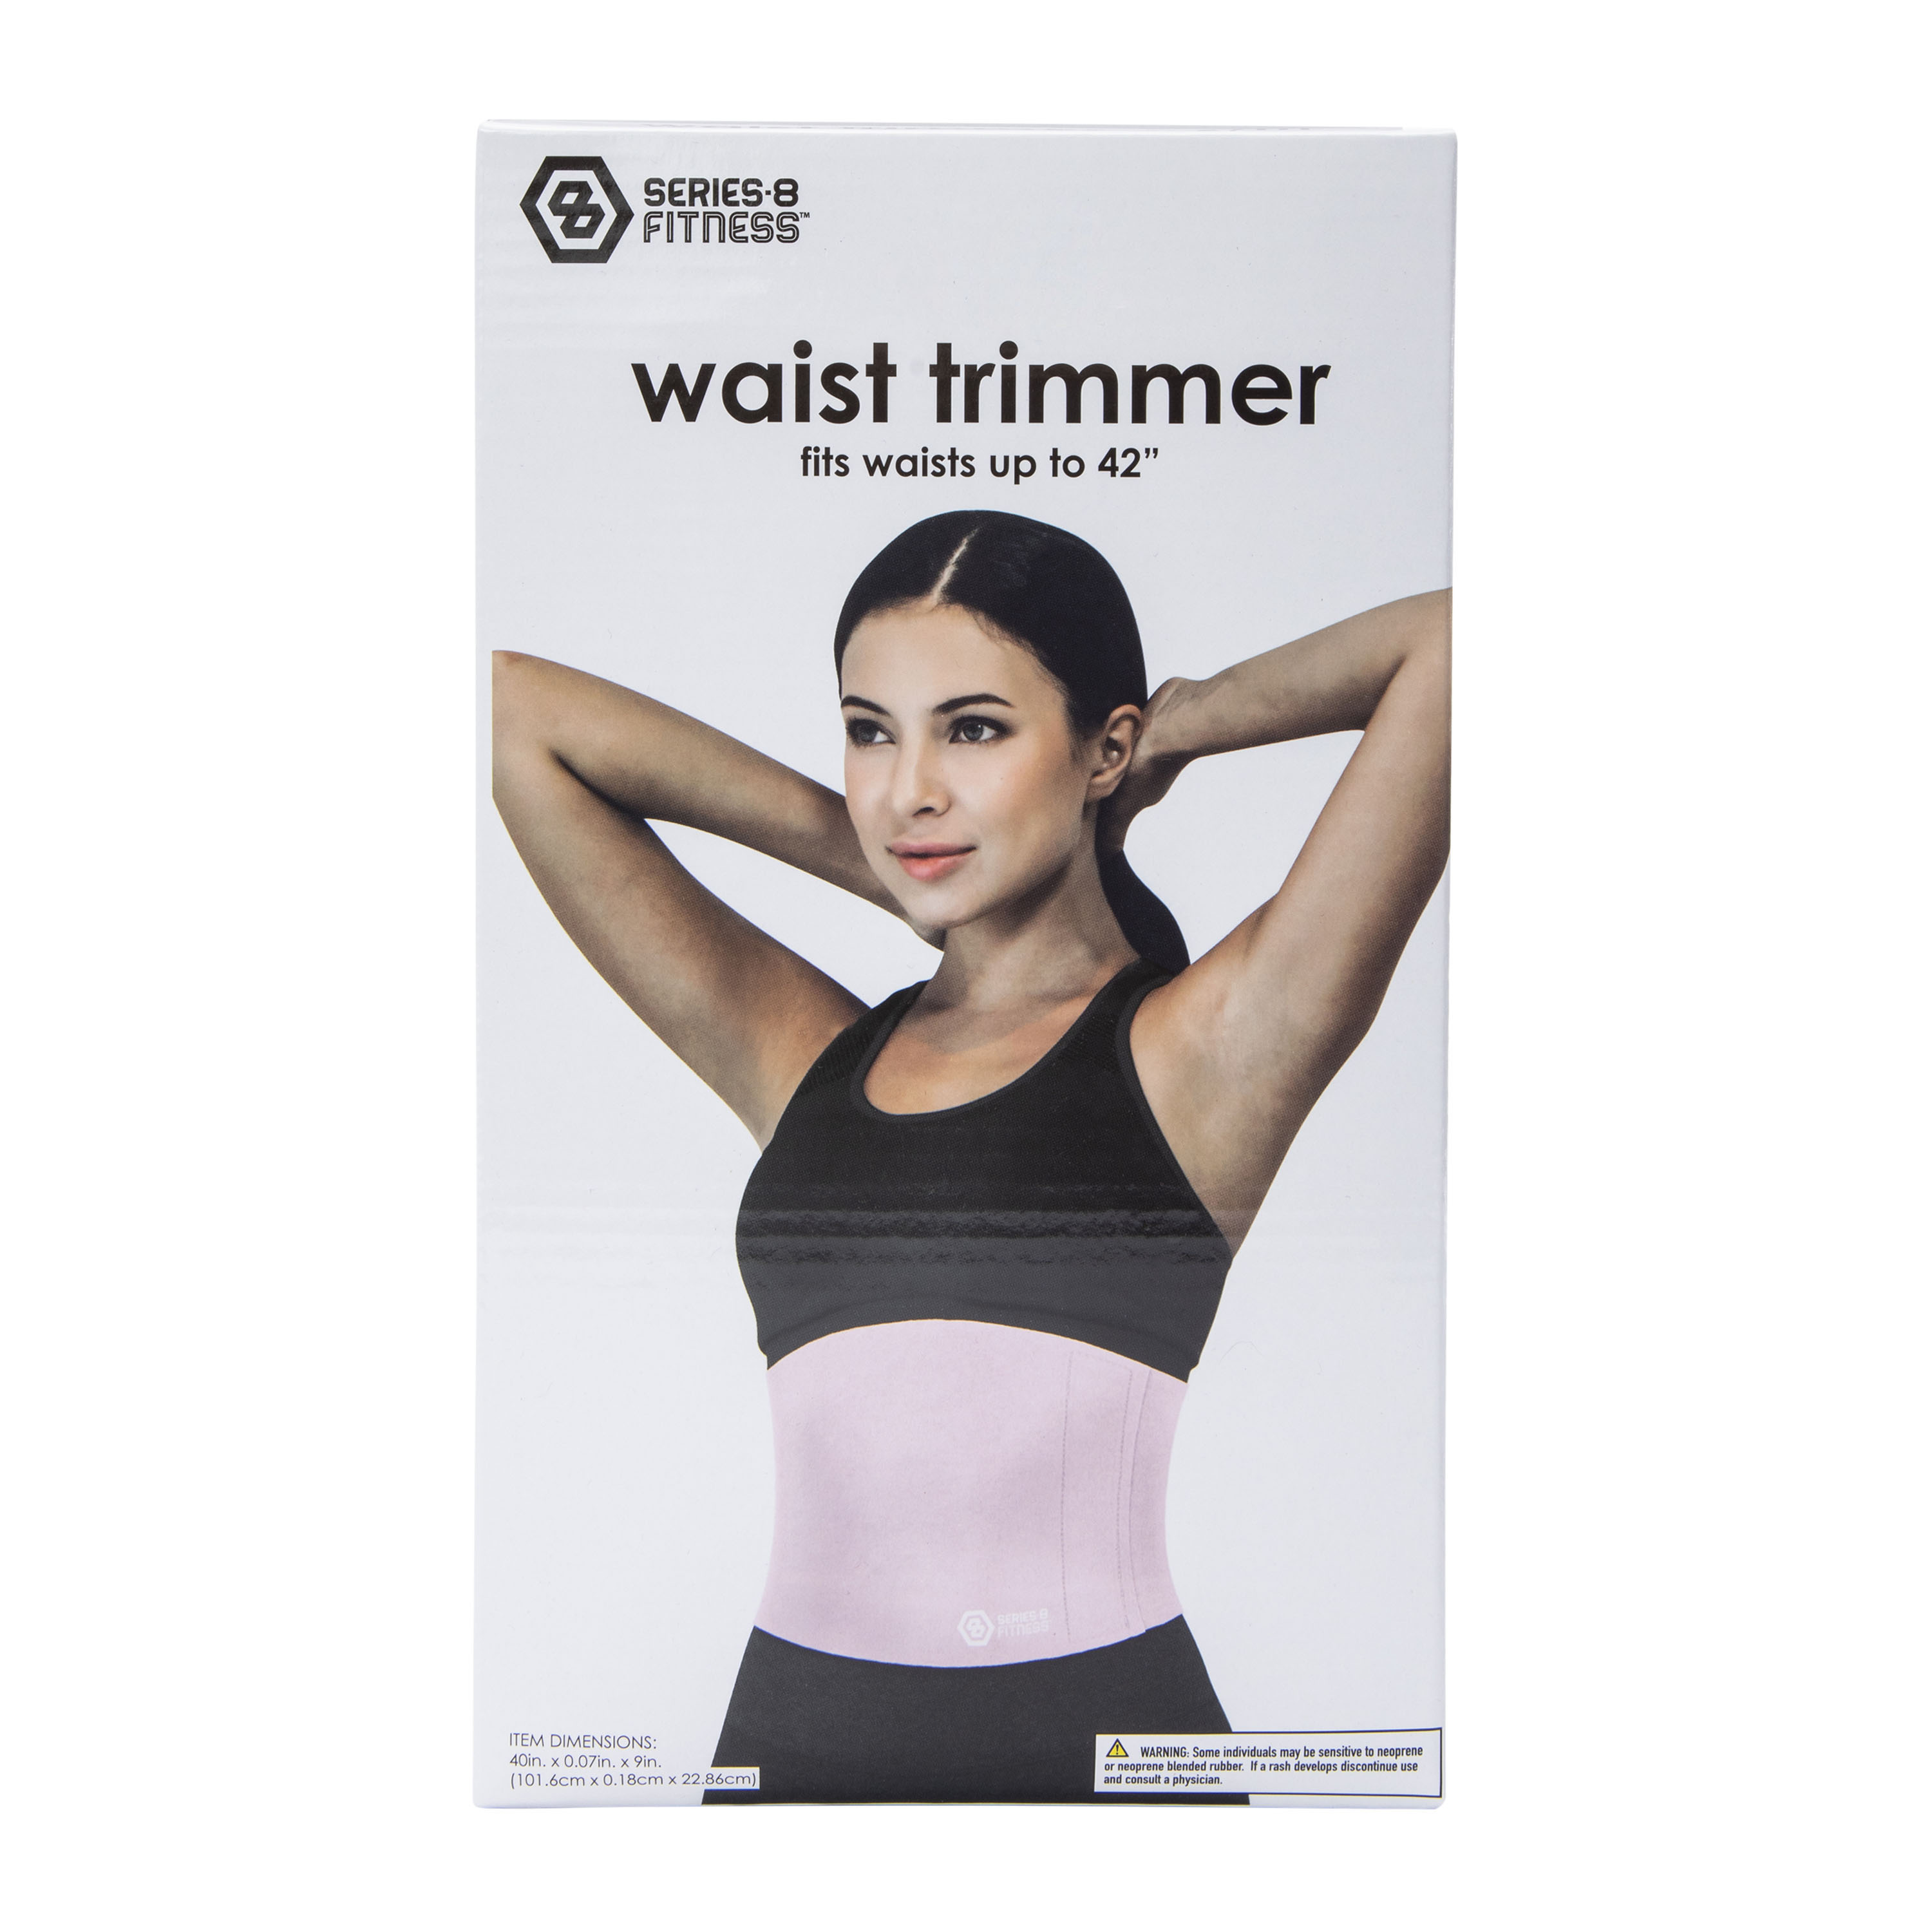 Series-8 Fitness™ Waist Trimmer, Five Below